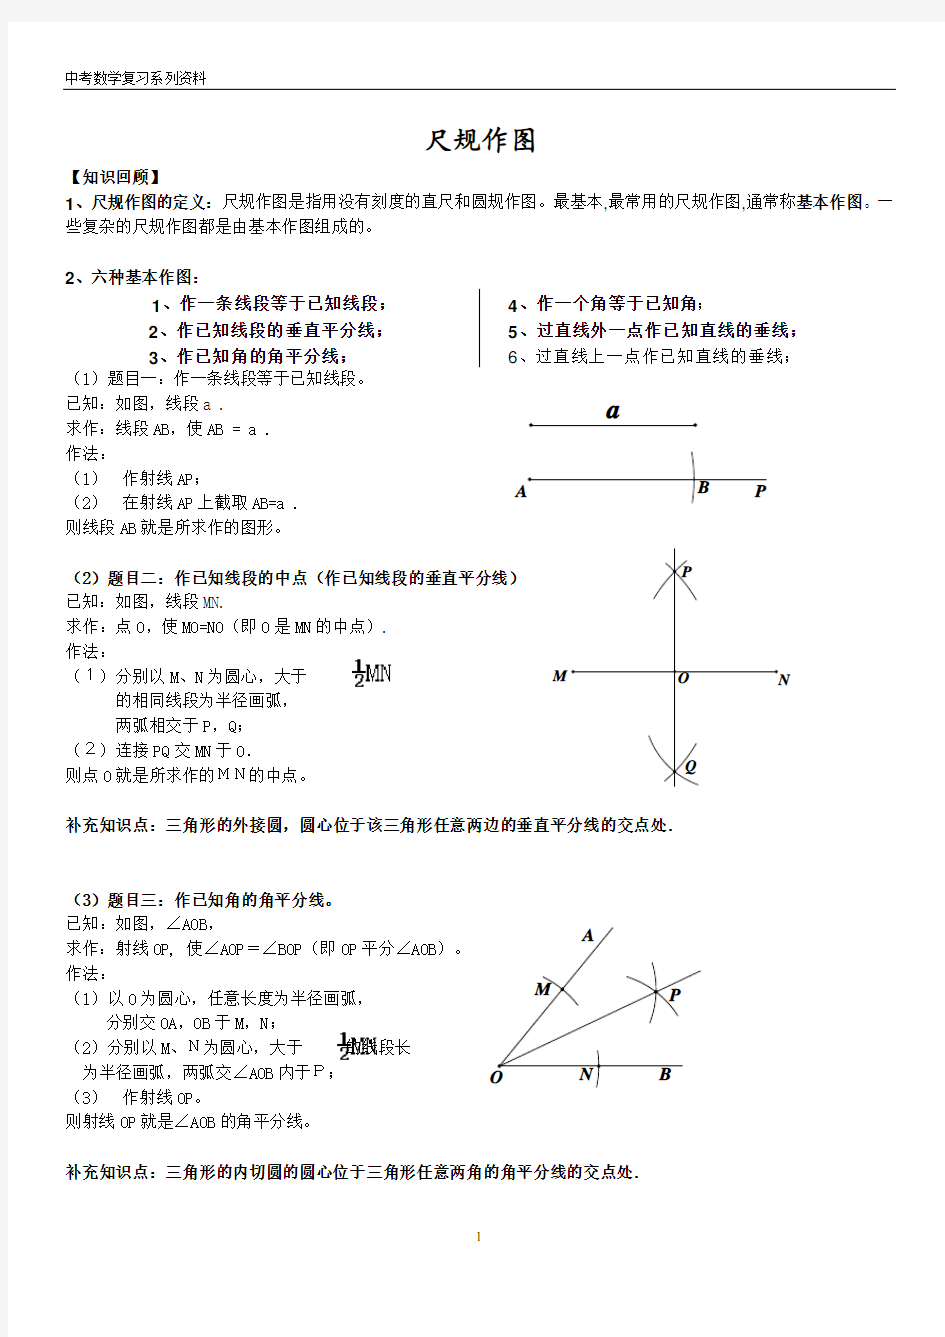 (完整版)2017年广州中考数学复习-尺规作图知识点与练习